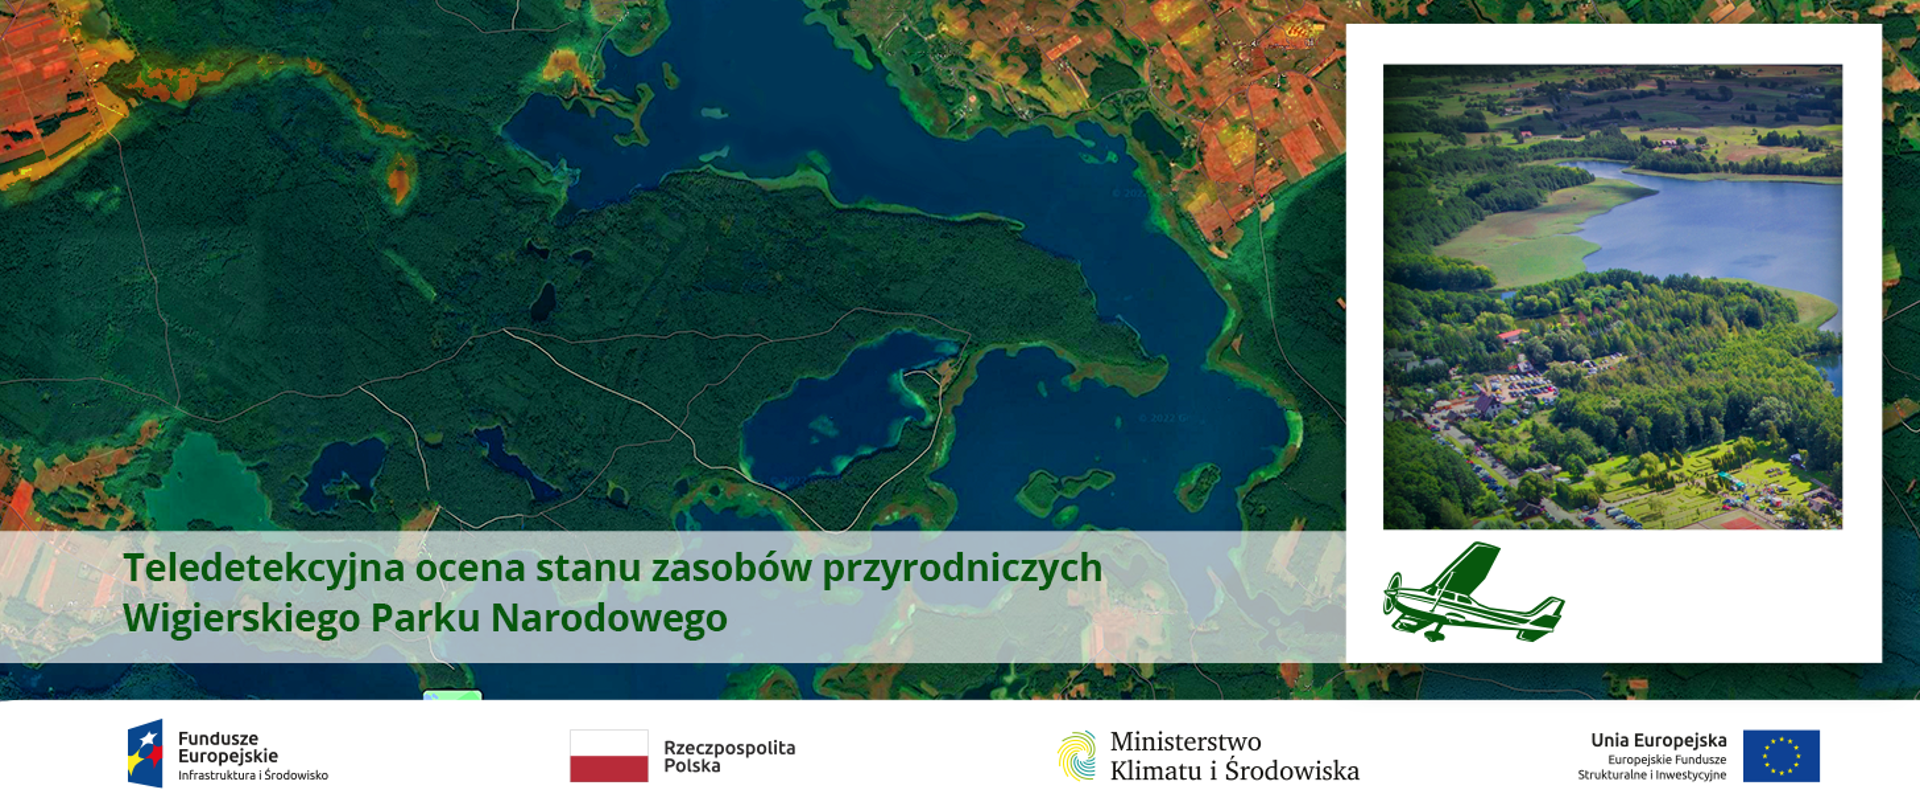 Teledetekcyjna ocena stanu zasobów przyrodniczych Wigierskiego Parku Narodowego